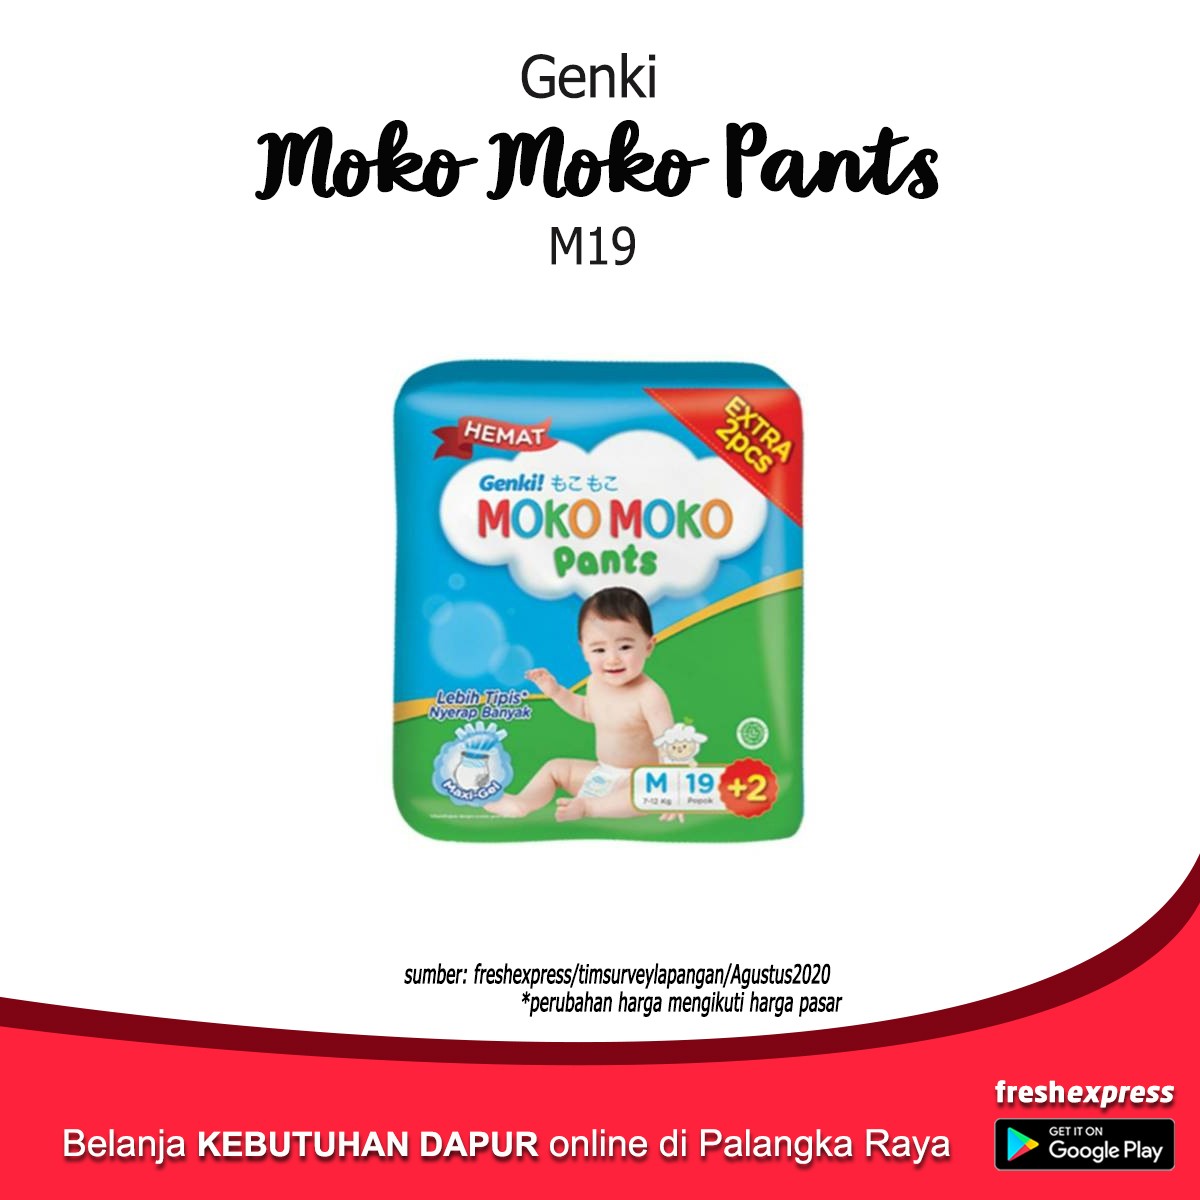 Genki Moko Moko Pants M19